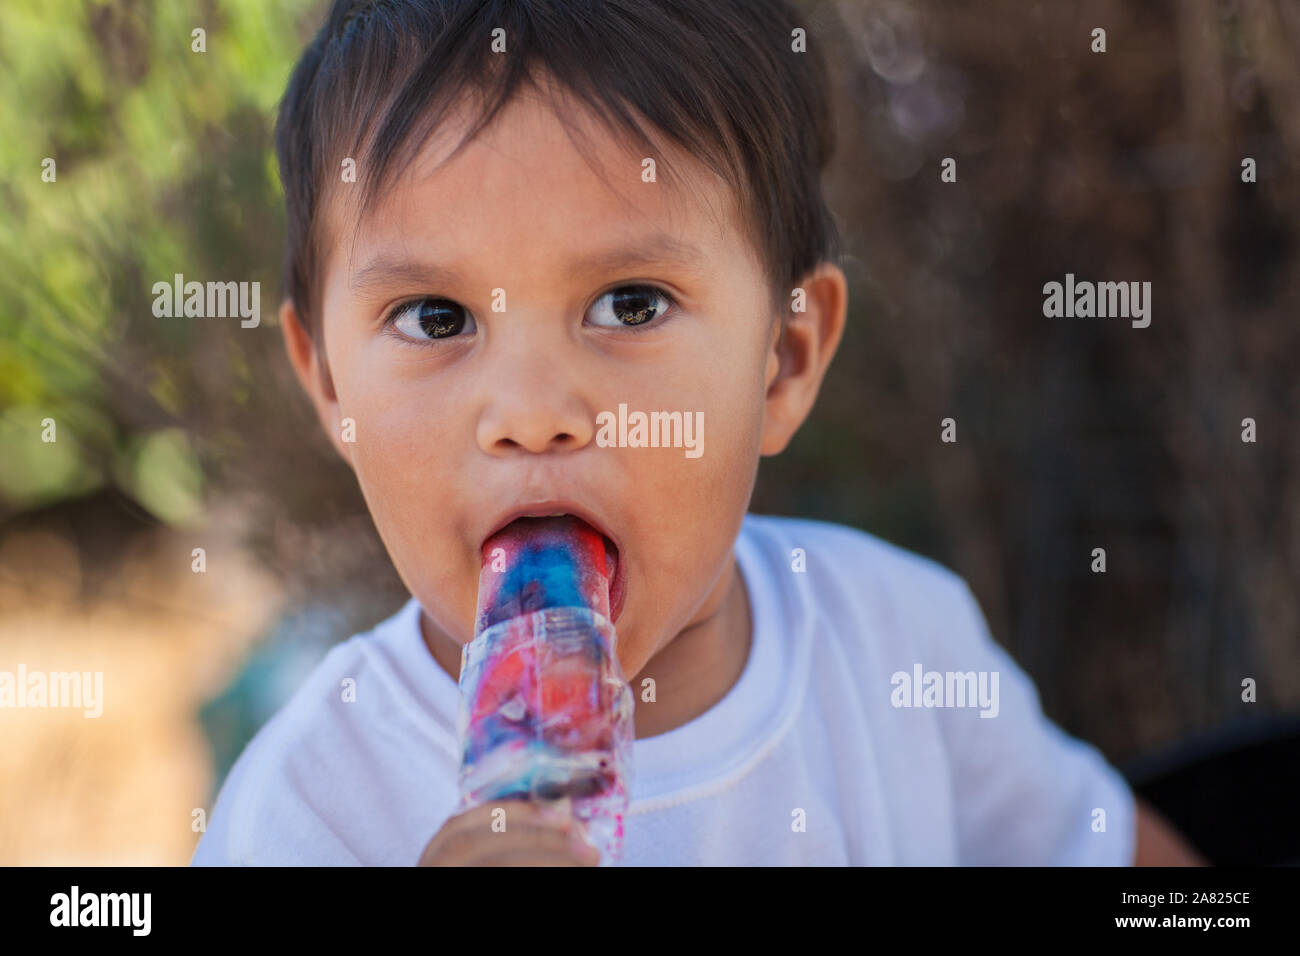 Un jeune garçon mangeant une glace congelée et traiter avec un air de surprise sur son visage. Banque D'Images